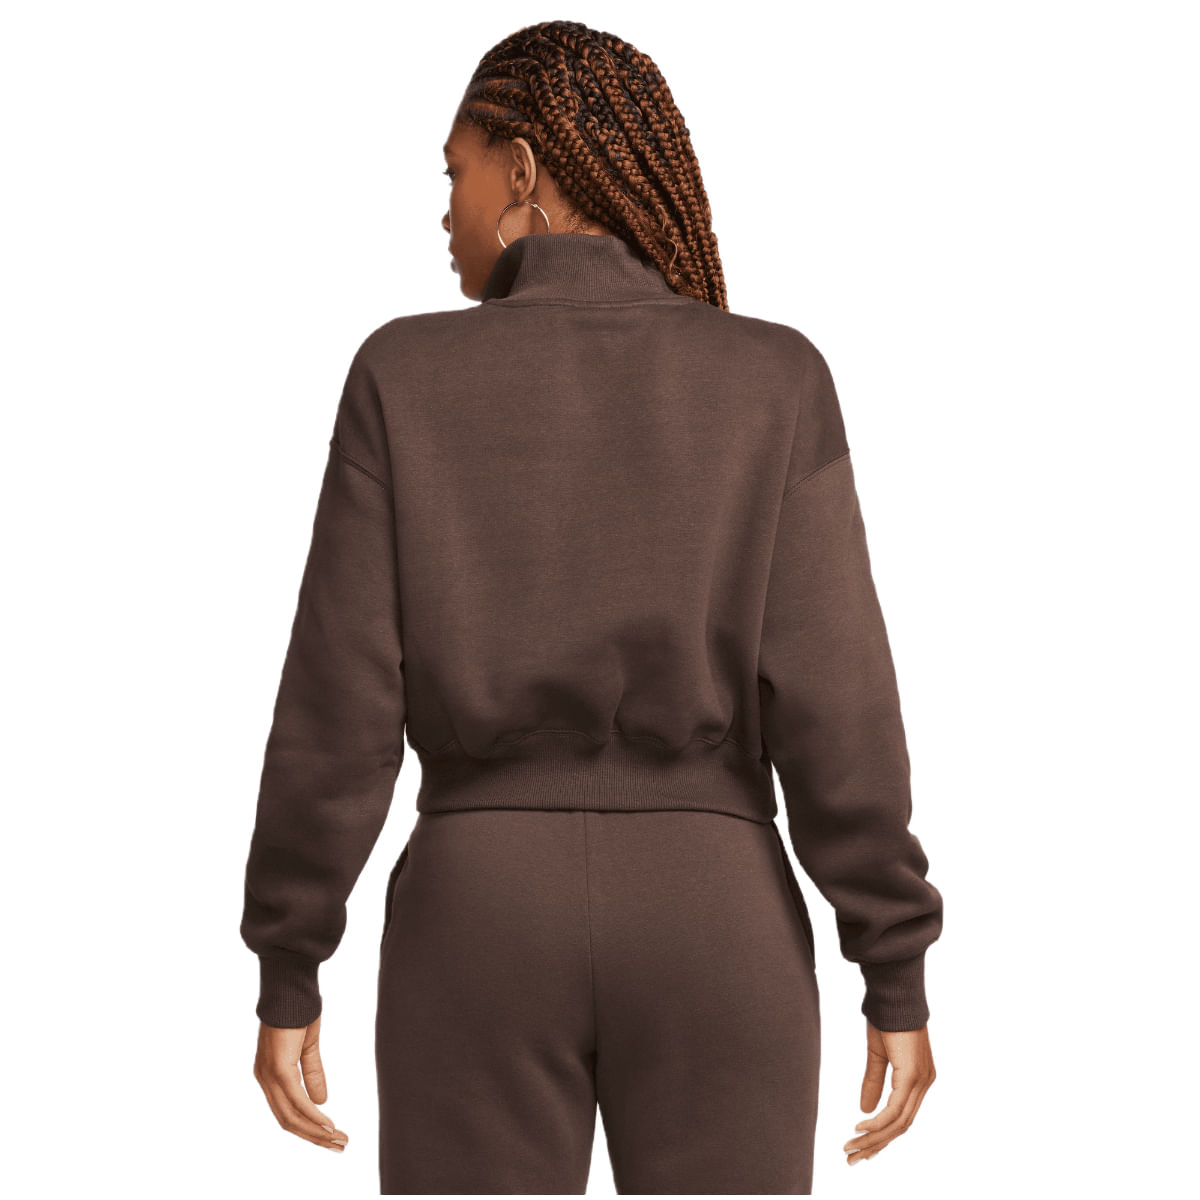 NIKE Women's Nike Sportswear Phoenix Fleece Oversized Half-Zip Crop  Sweatshirt